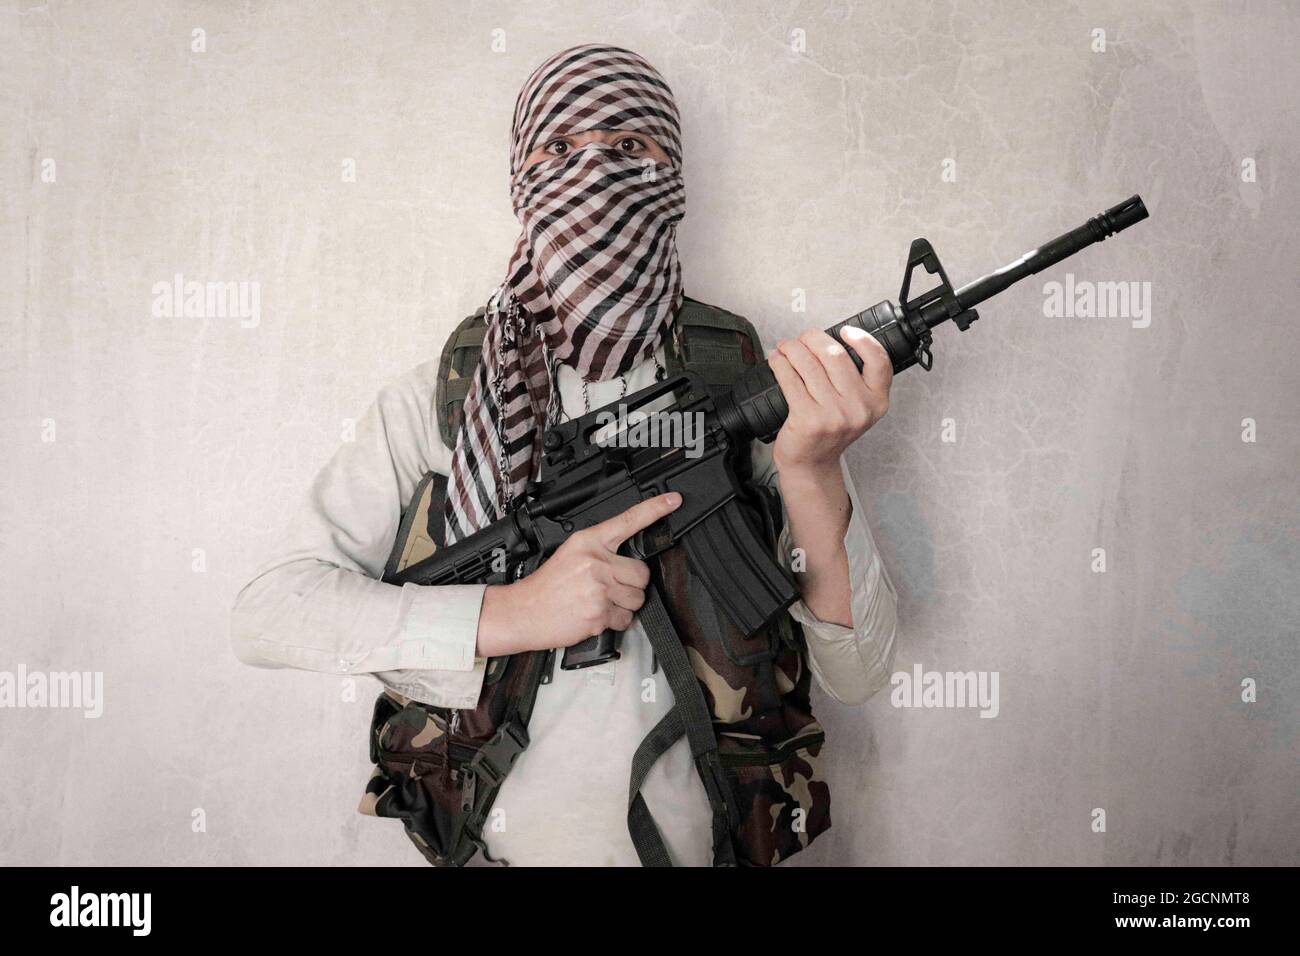 Combattant taliban avec des armes m4, Afghanistan, Kaboul. Banque D'Images